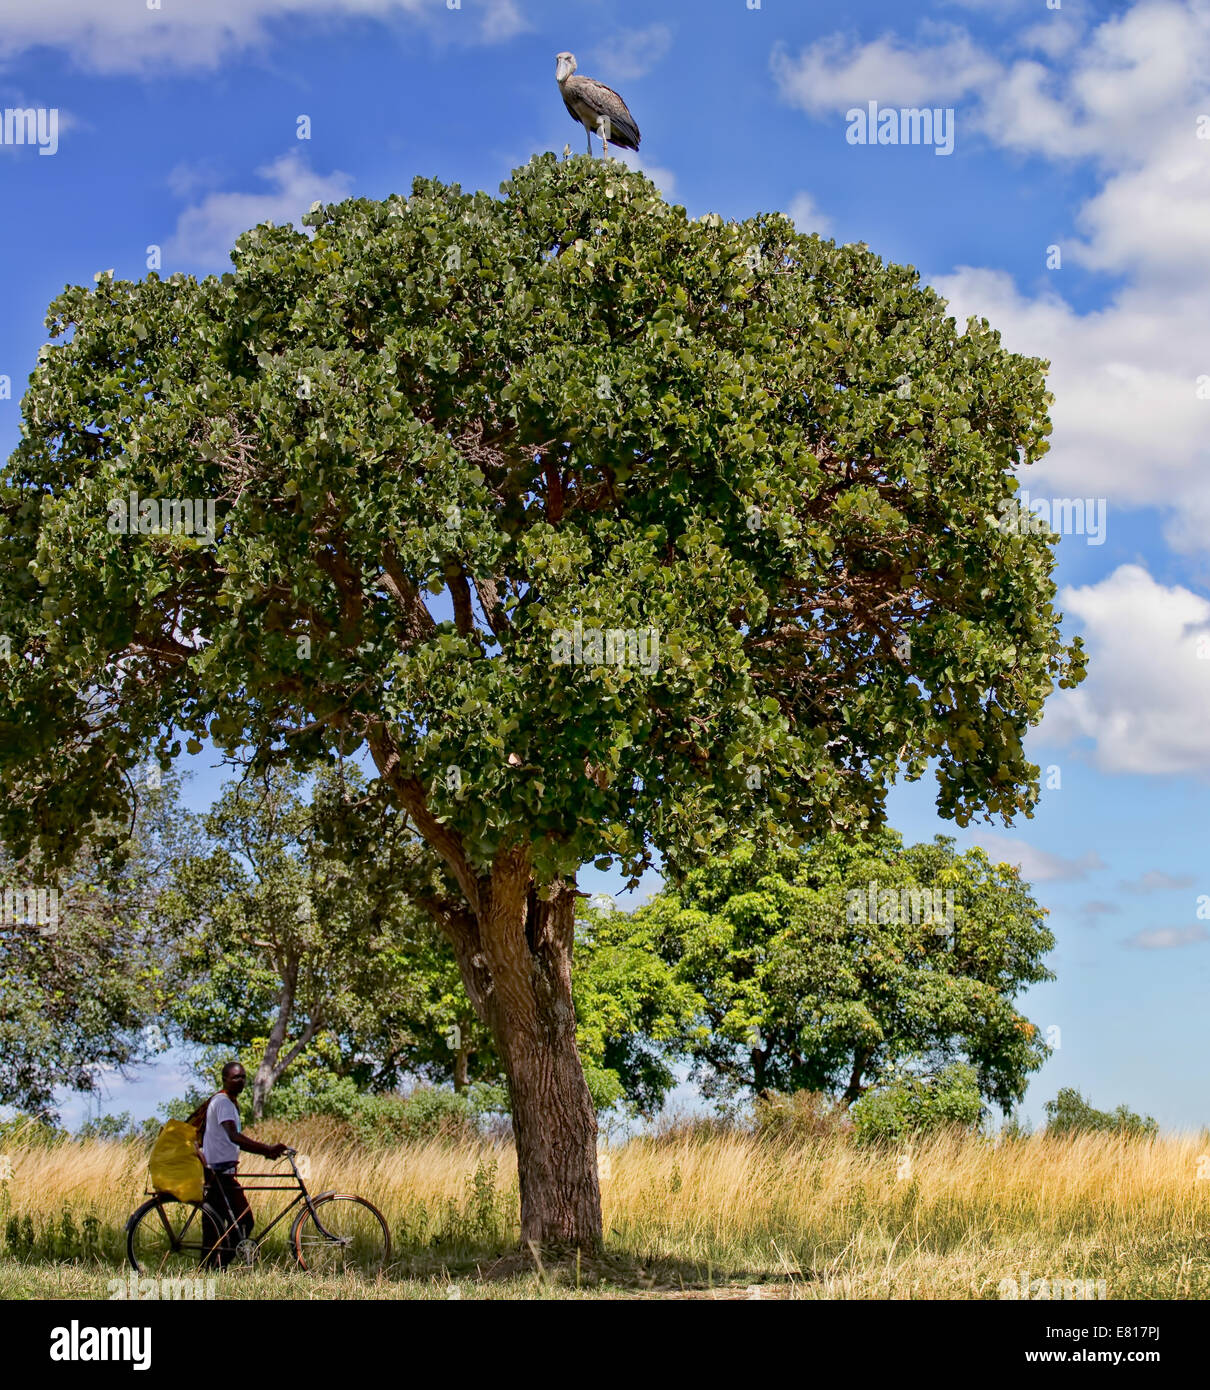 Un Bec-en-sabot est situé au sommet d'un arbre comme un homme pousse son vélo en dessous Banque D'Images